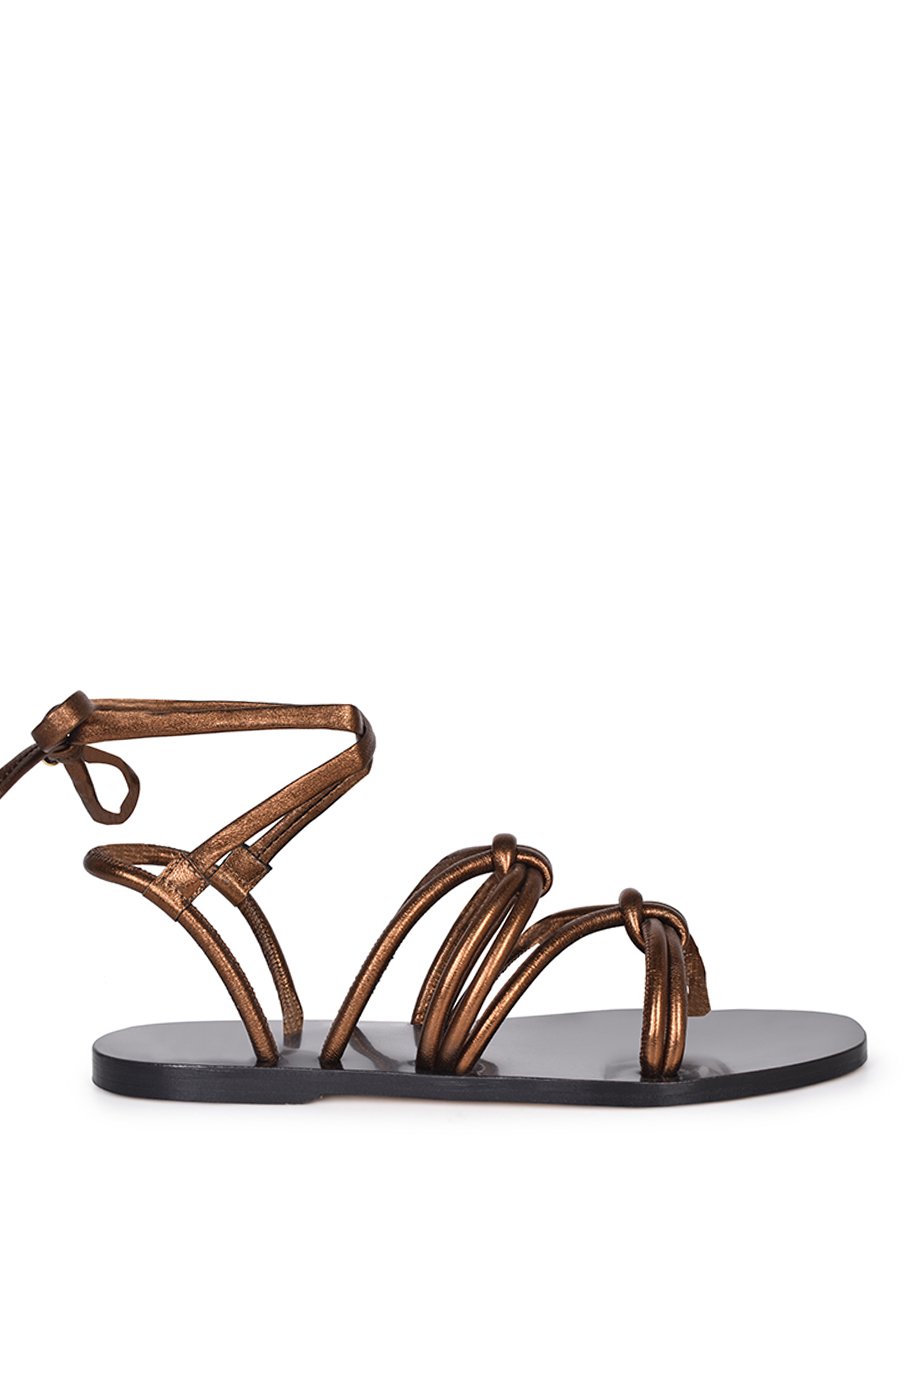 Husk Dream Sandal - Bronze